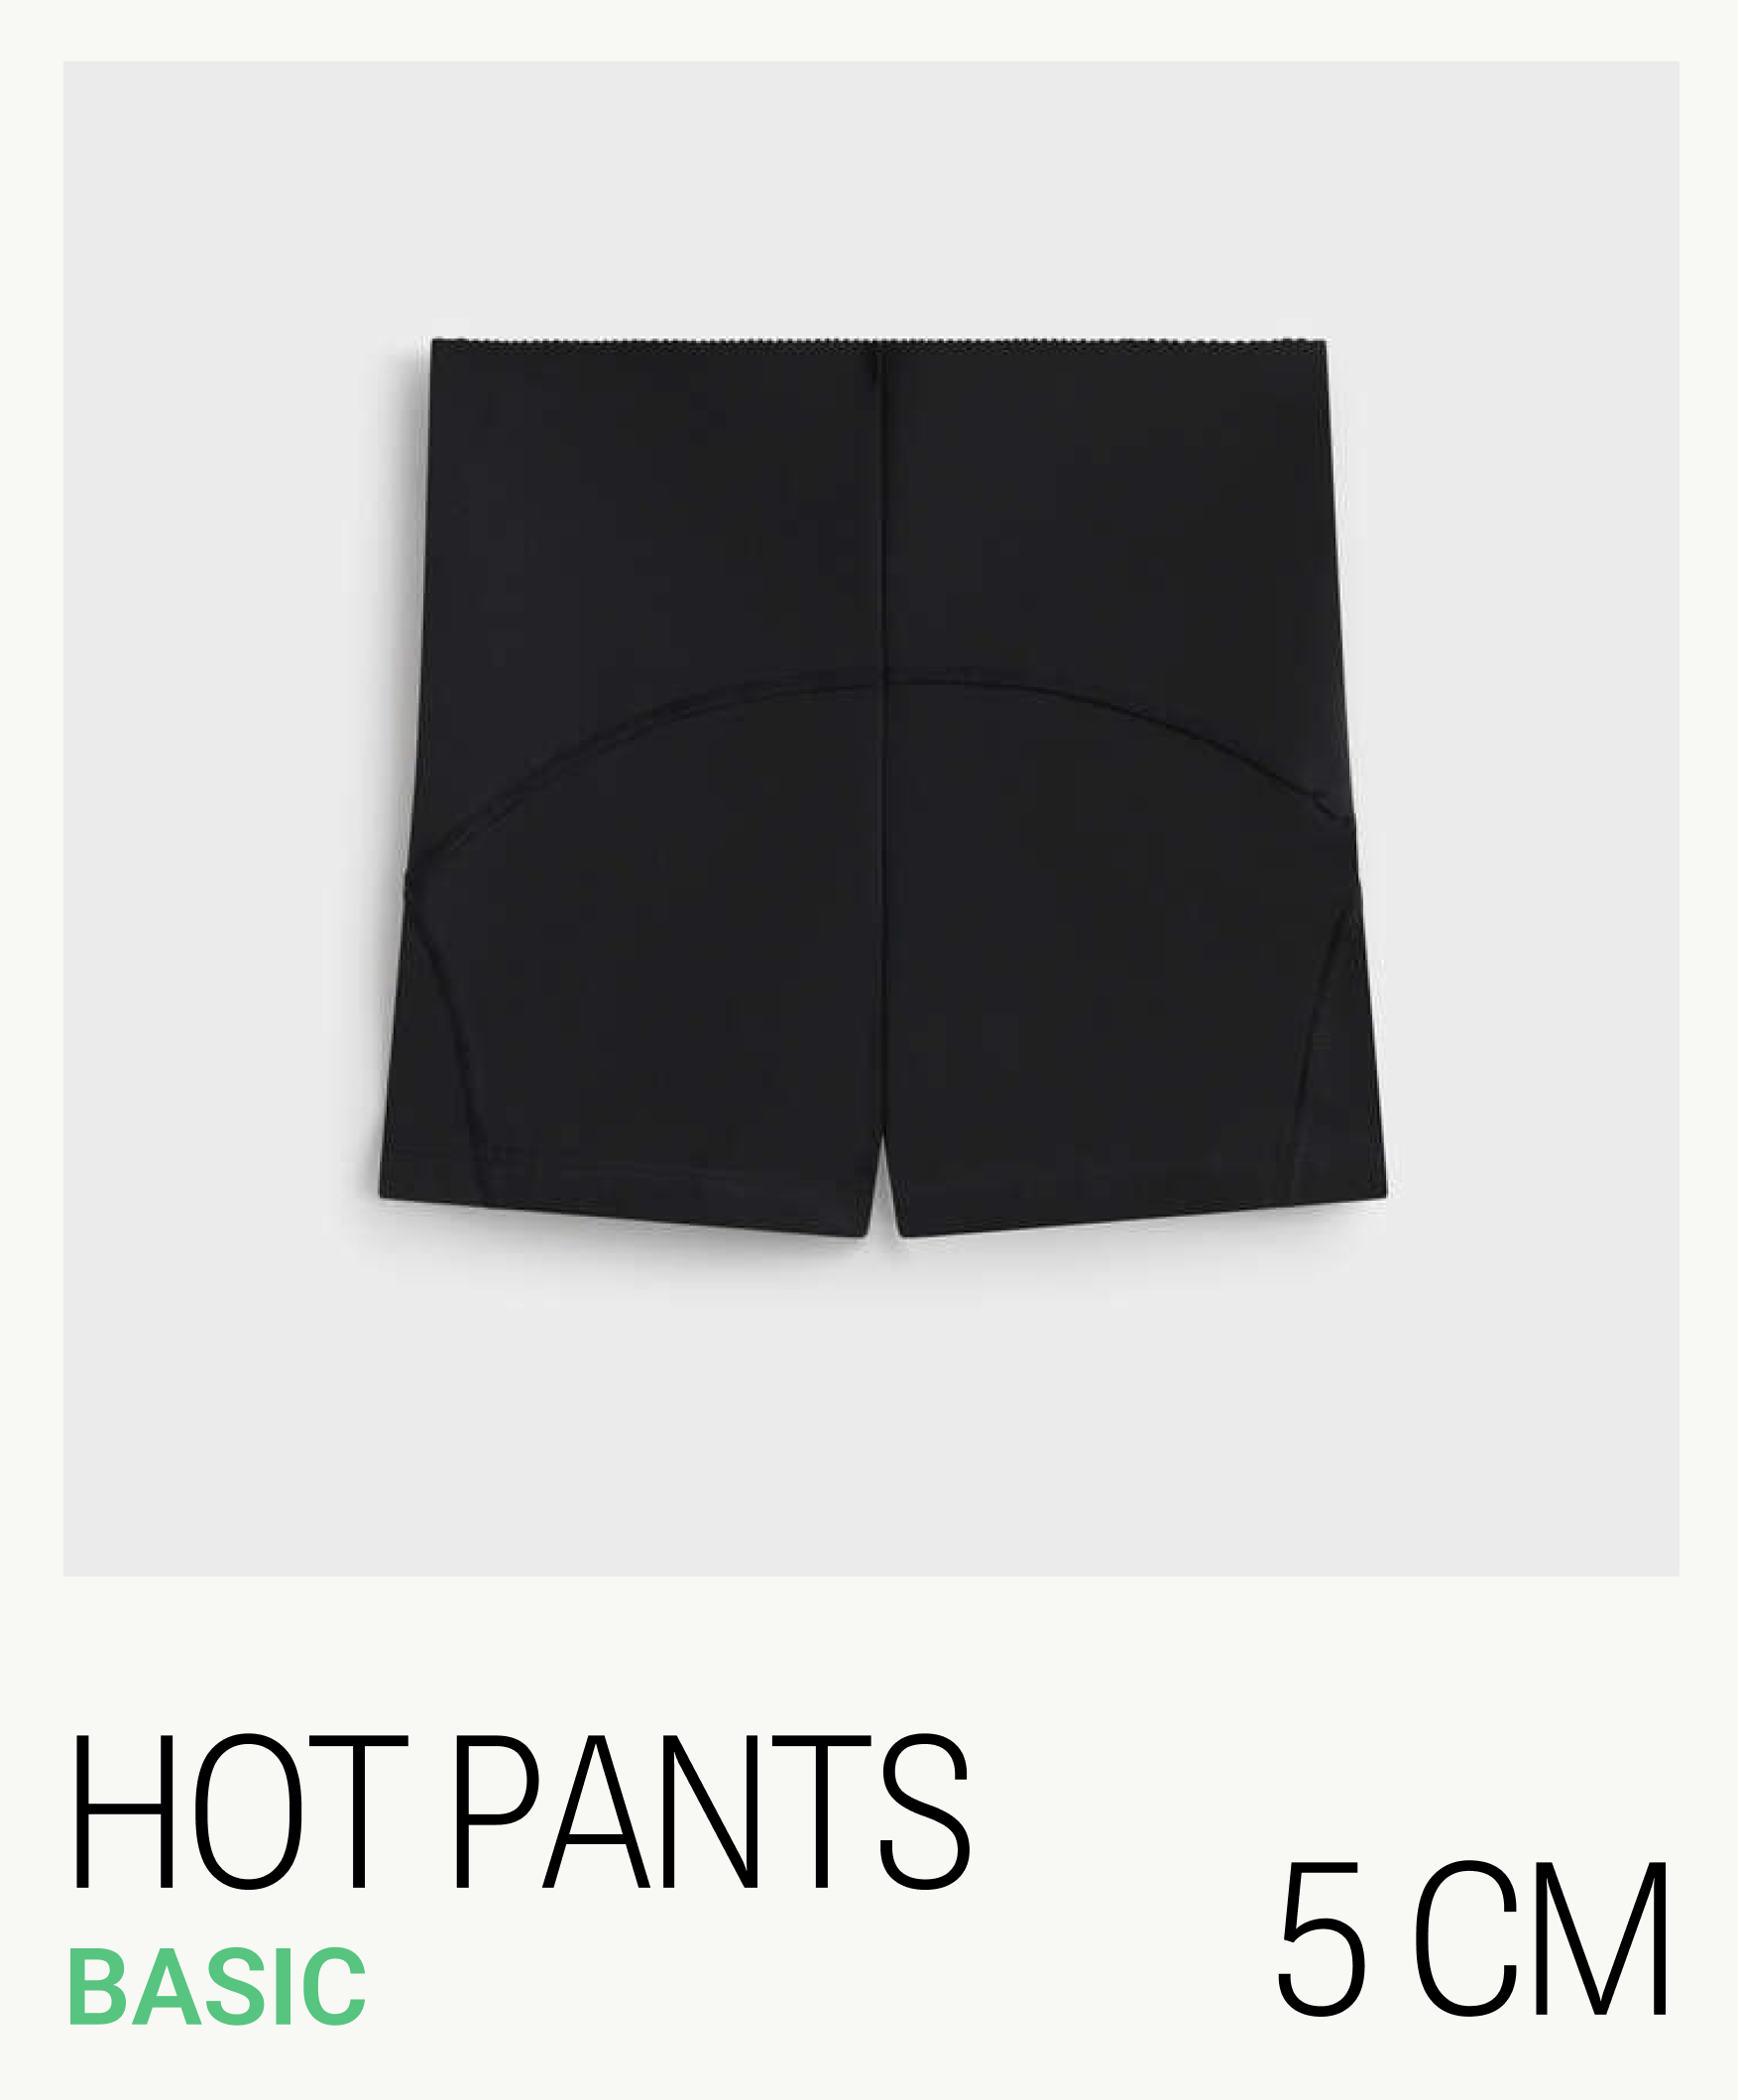 Hot pants compressive 5 cm